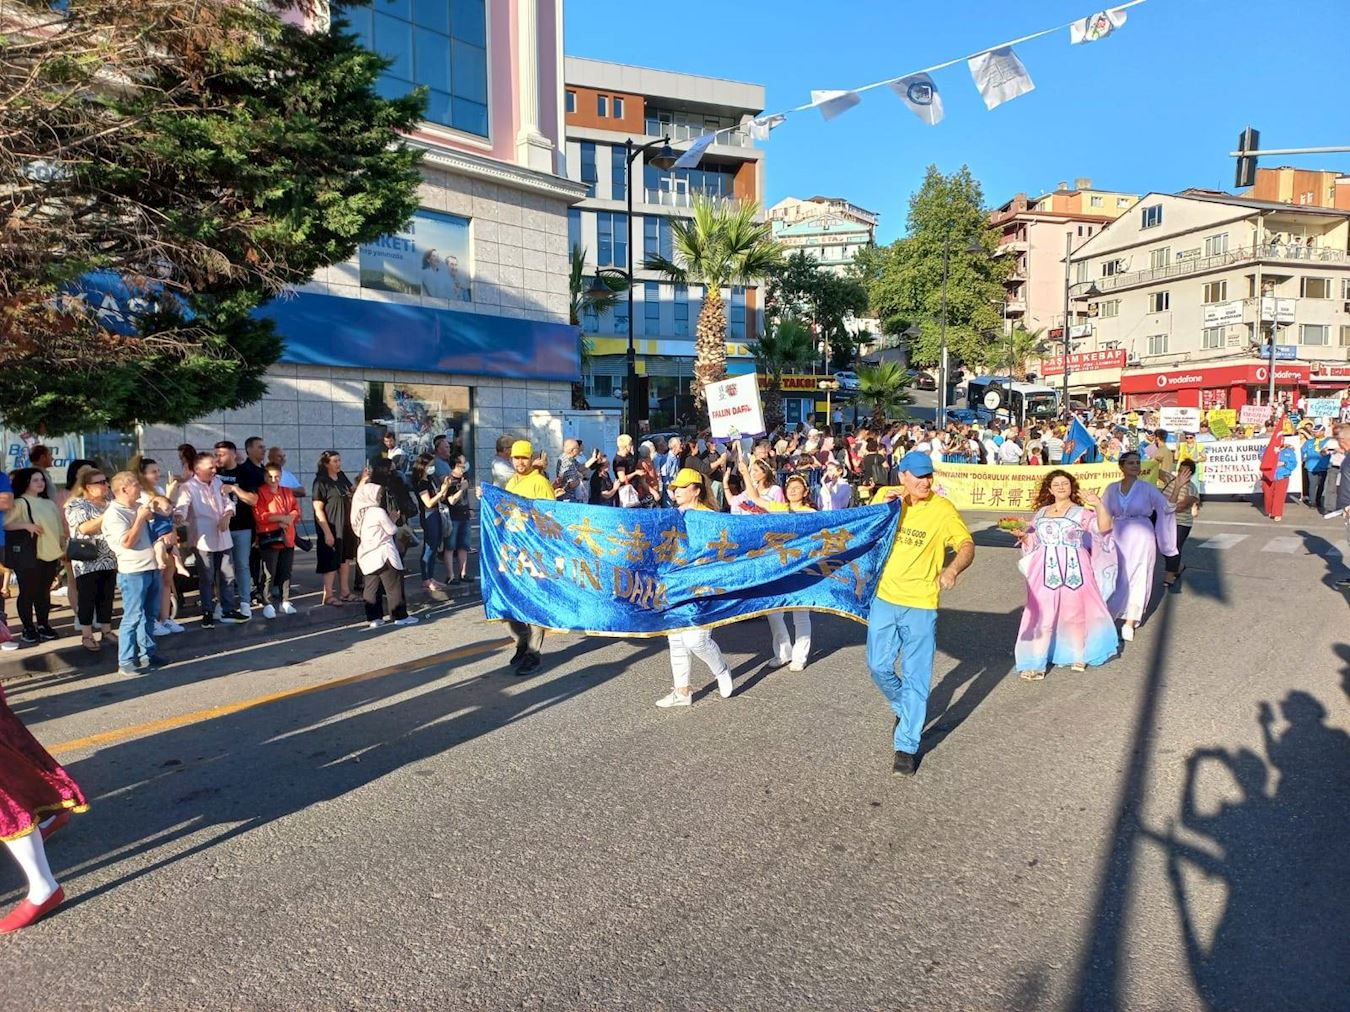 '图2：七月二十一日，土耳其法轮功学员参加“爱、友谊与和平”国际文化艺术节的游行，受到两旁观众的欢迎，他们有的跟学员招手，有的鼓掌喝彩。'